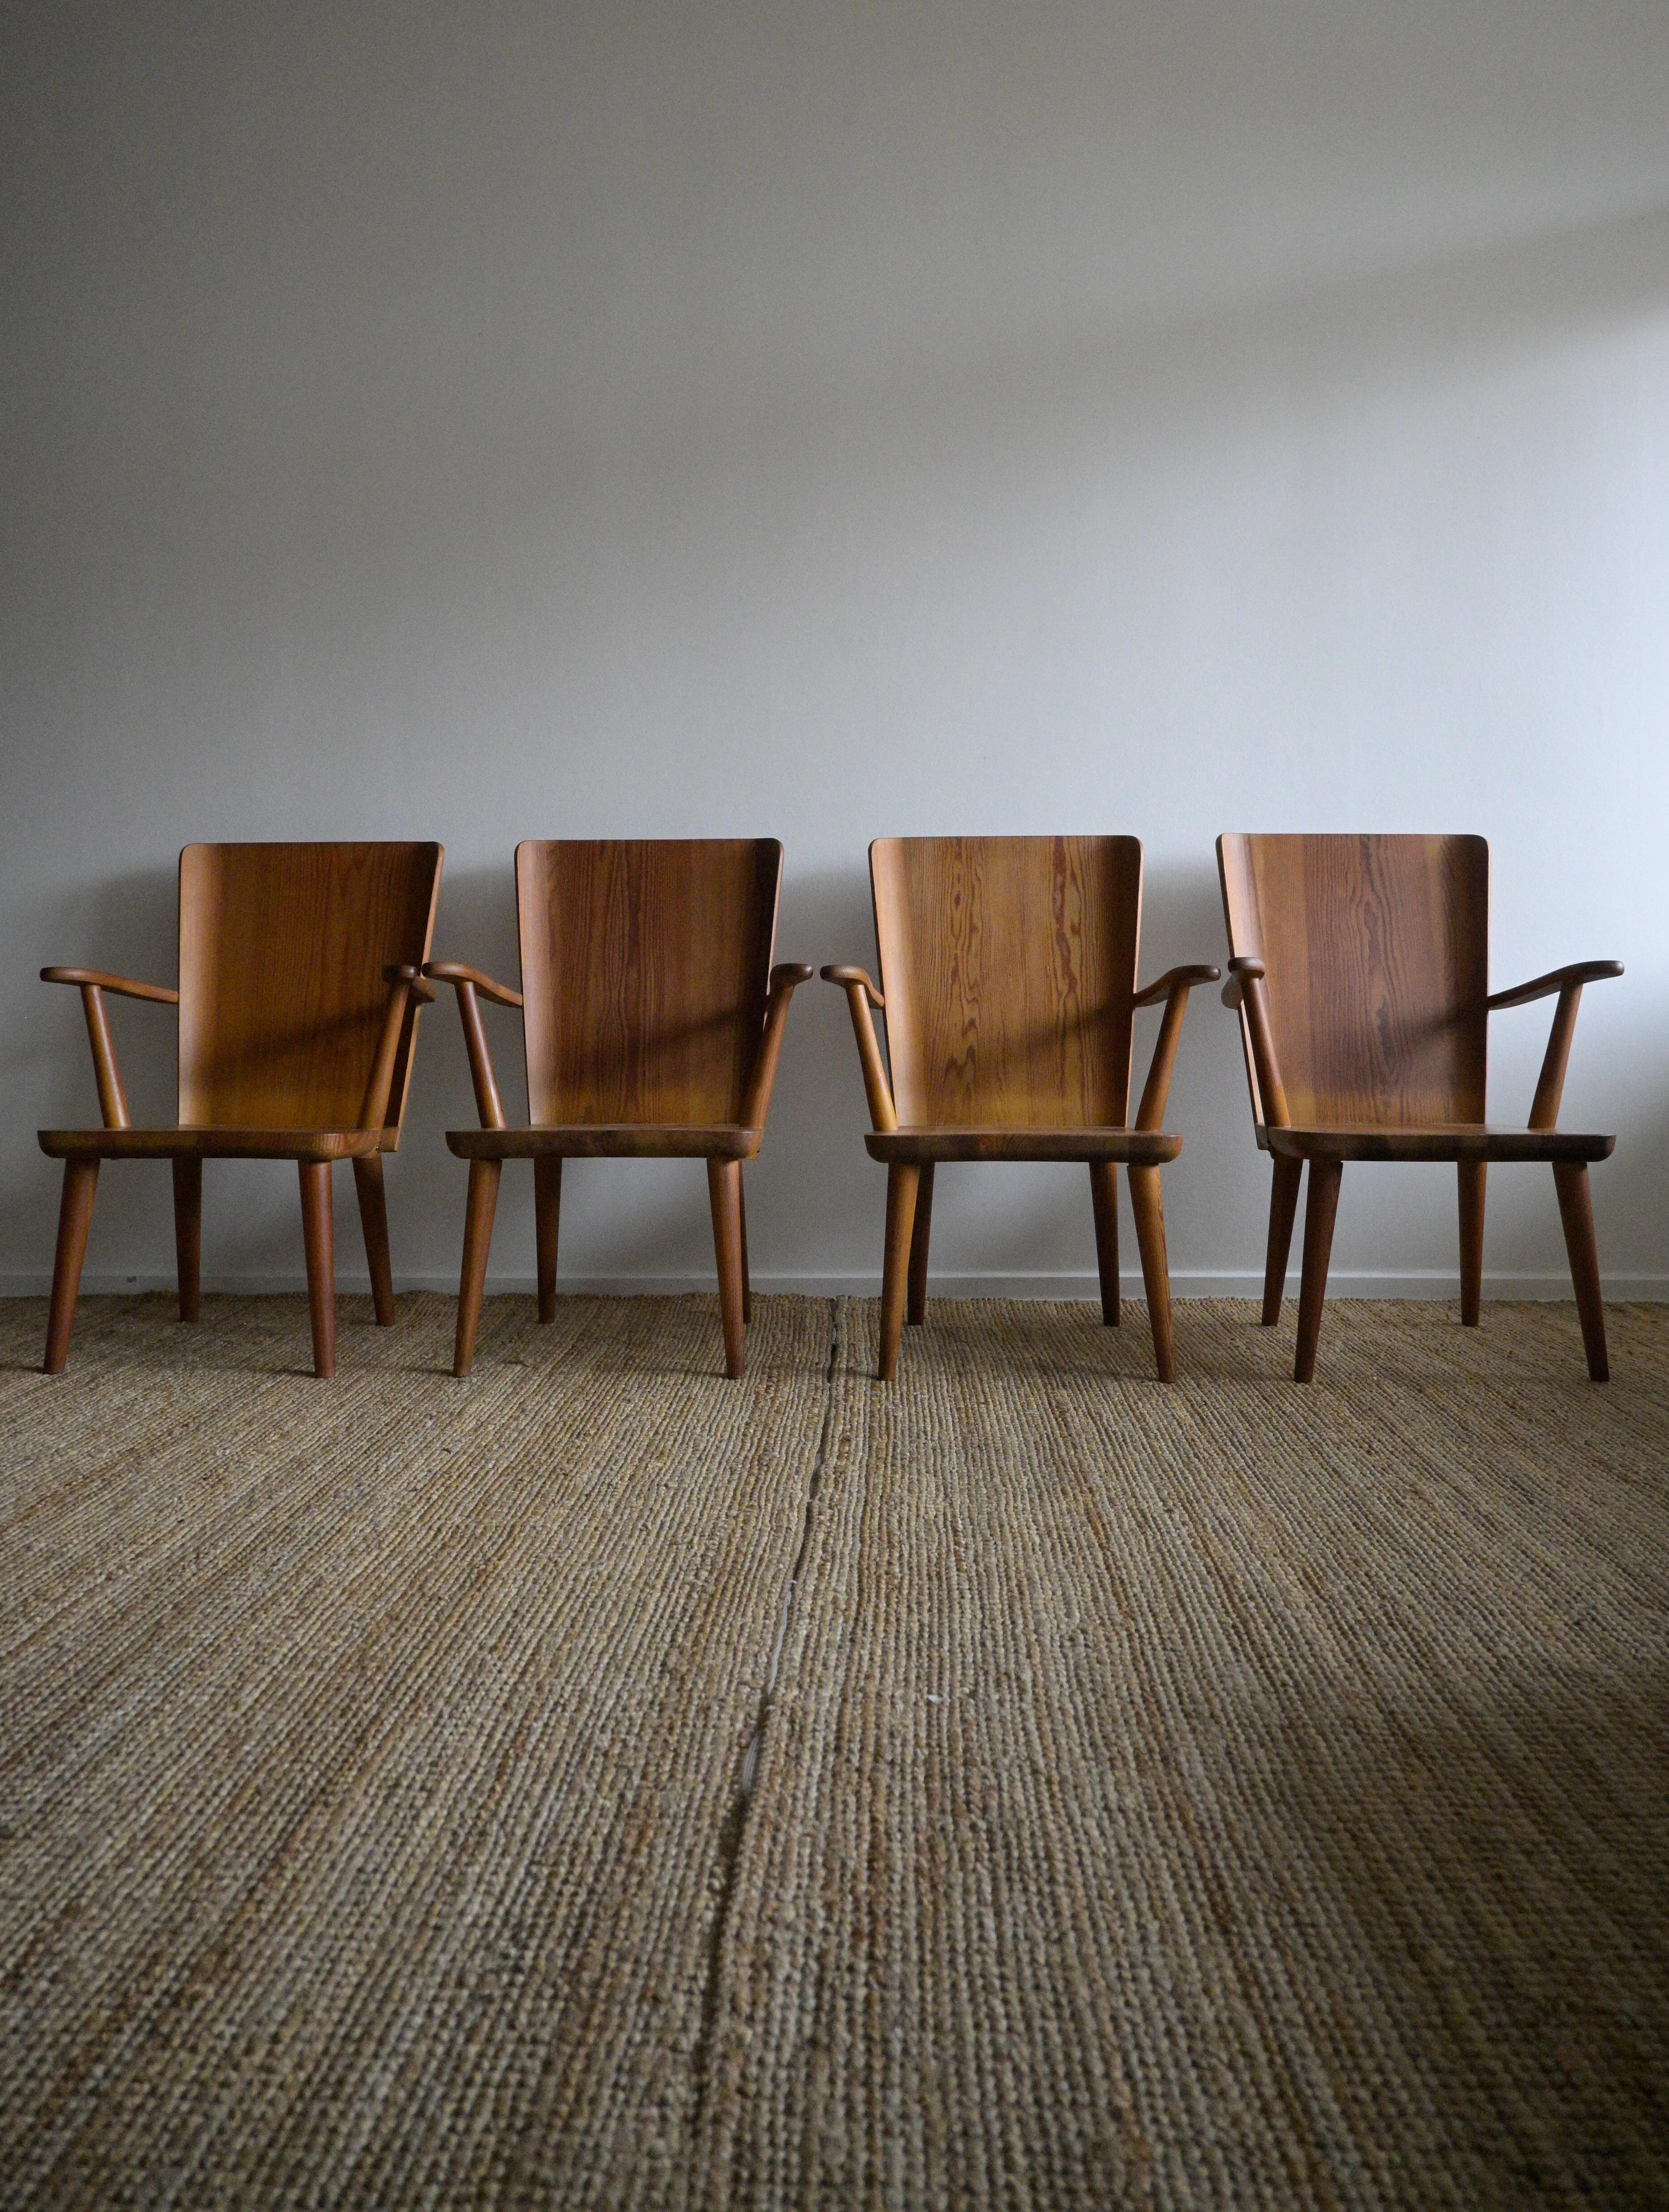 Ensemble de quatre fauteuils du milieu du siècle dernier
conçu par Göran Malmvall
Produit par Svensk Furu dans les années 1940

Montre des signes d'âge et d'utilisation.
Une chaise présente des fissures sèches sur les accoudoirs. L'un d'entre eux